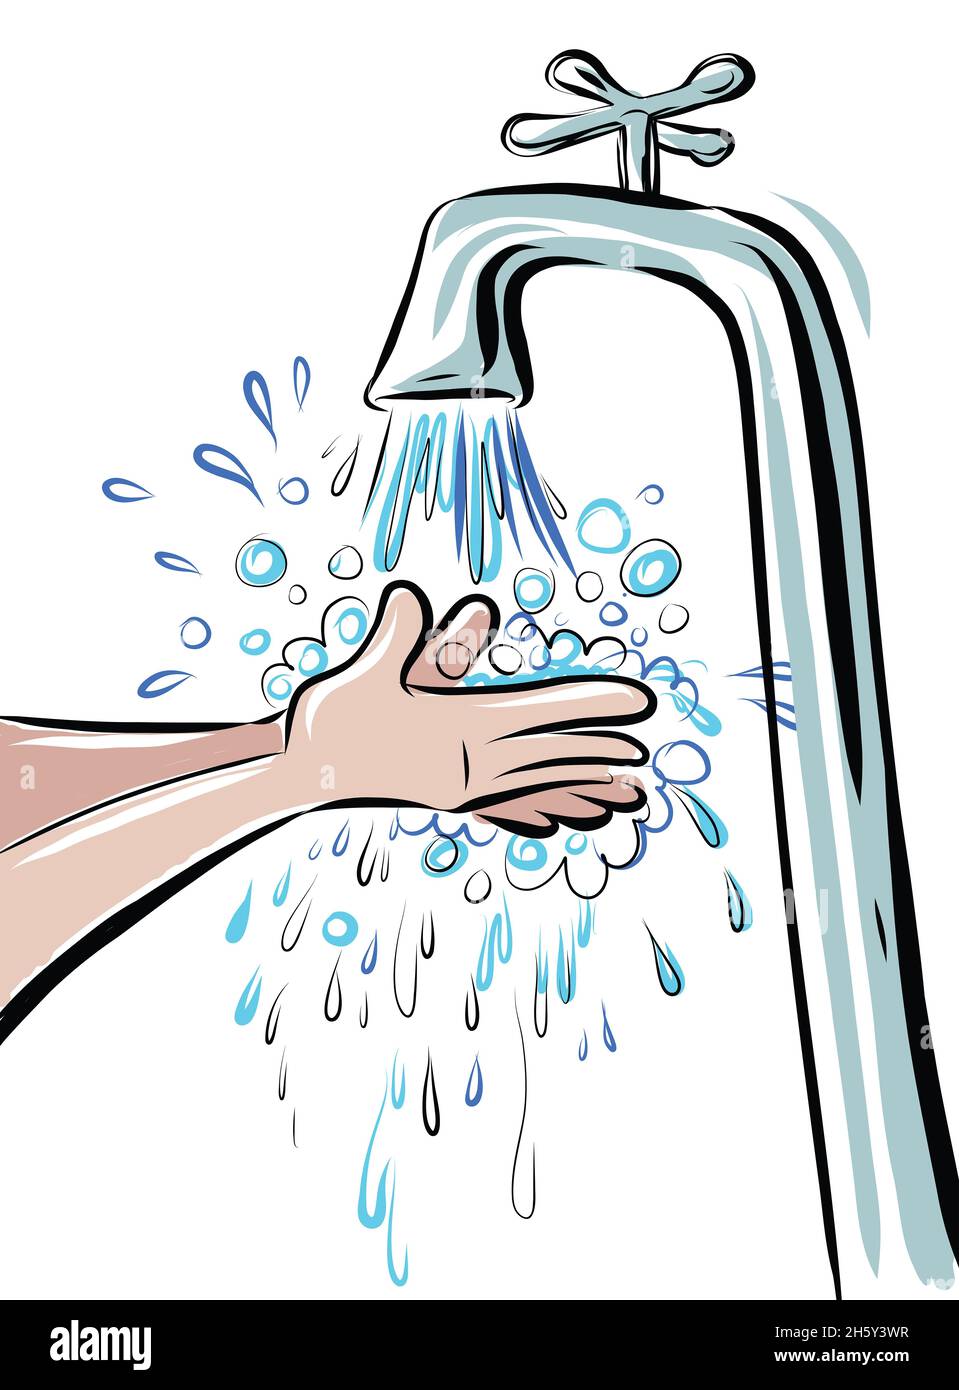 Cartoon-Illustration von zwei Händen, die unter fließendem Wasser gewaschen werden. Wasser fließt und stund und Wasser spritzt überall Stockfoto